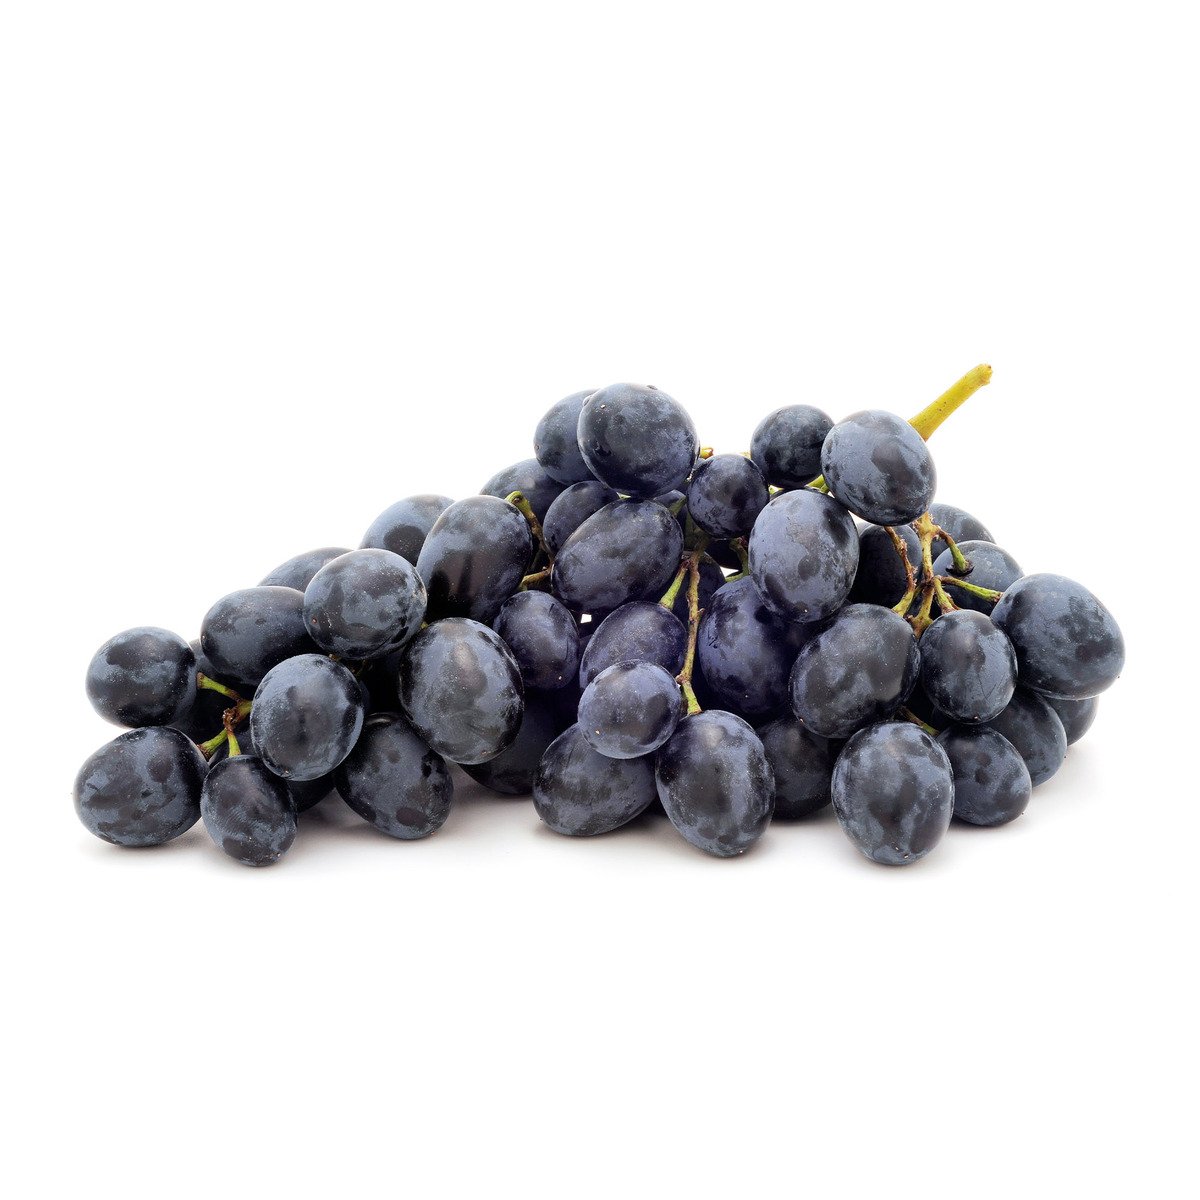 Buy Grapes Black Australia 1 kg Online at Best Price | Grapes | Lulu Kuwait in UAE